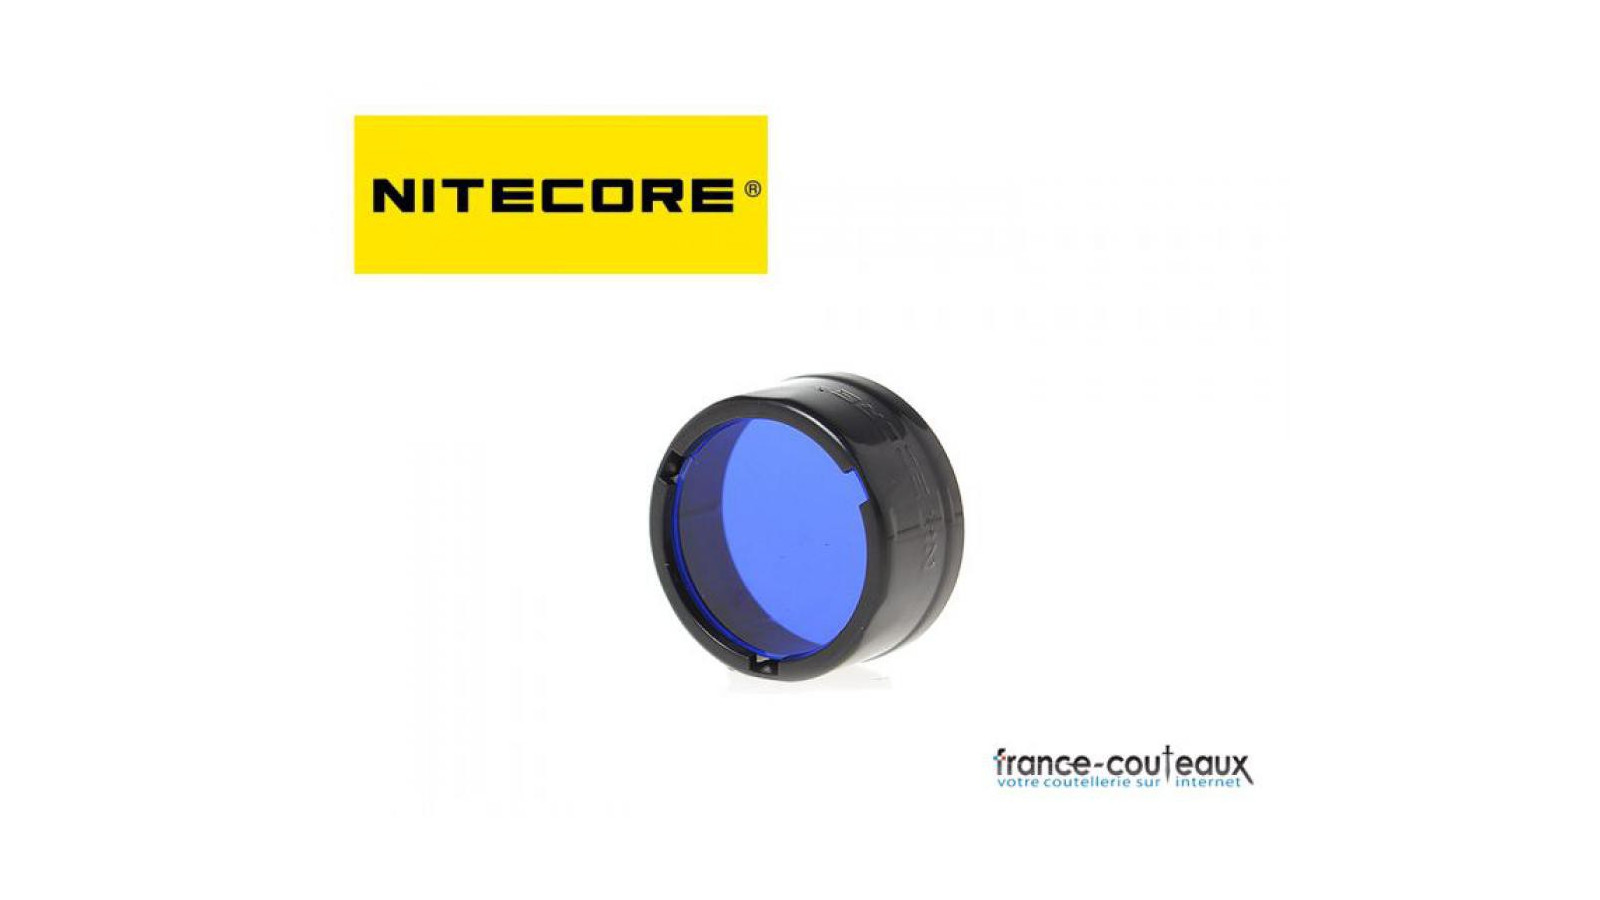 Filtre bleu Nitecore pour lampe de poche diametre 25 mm